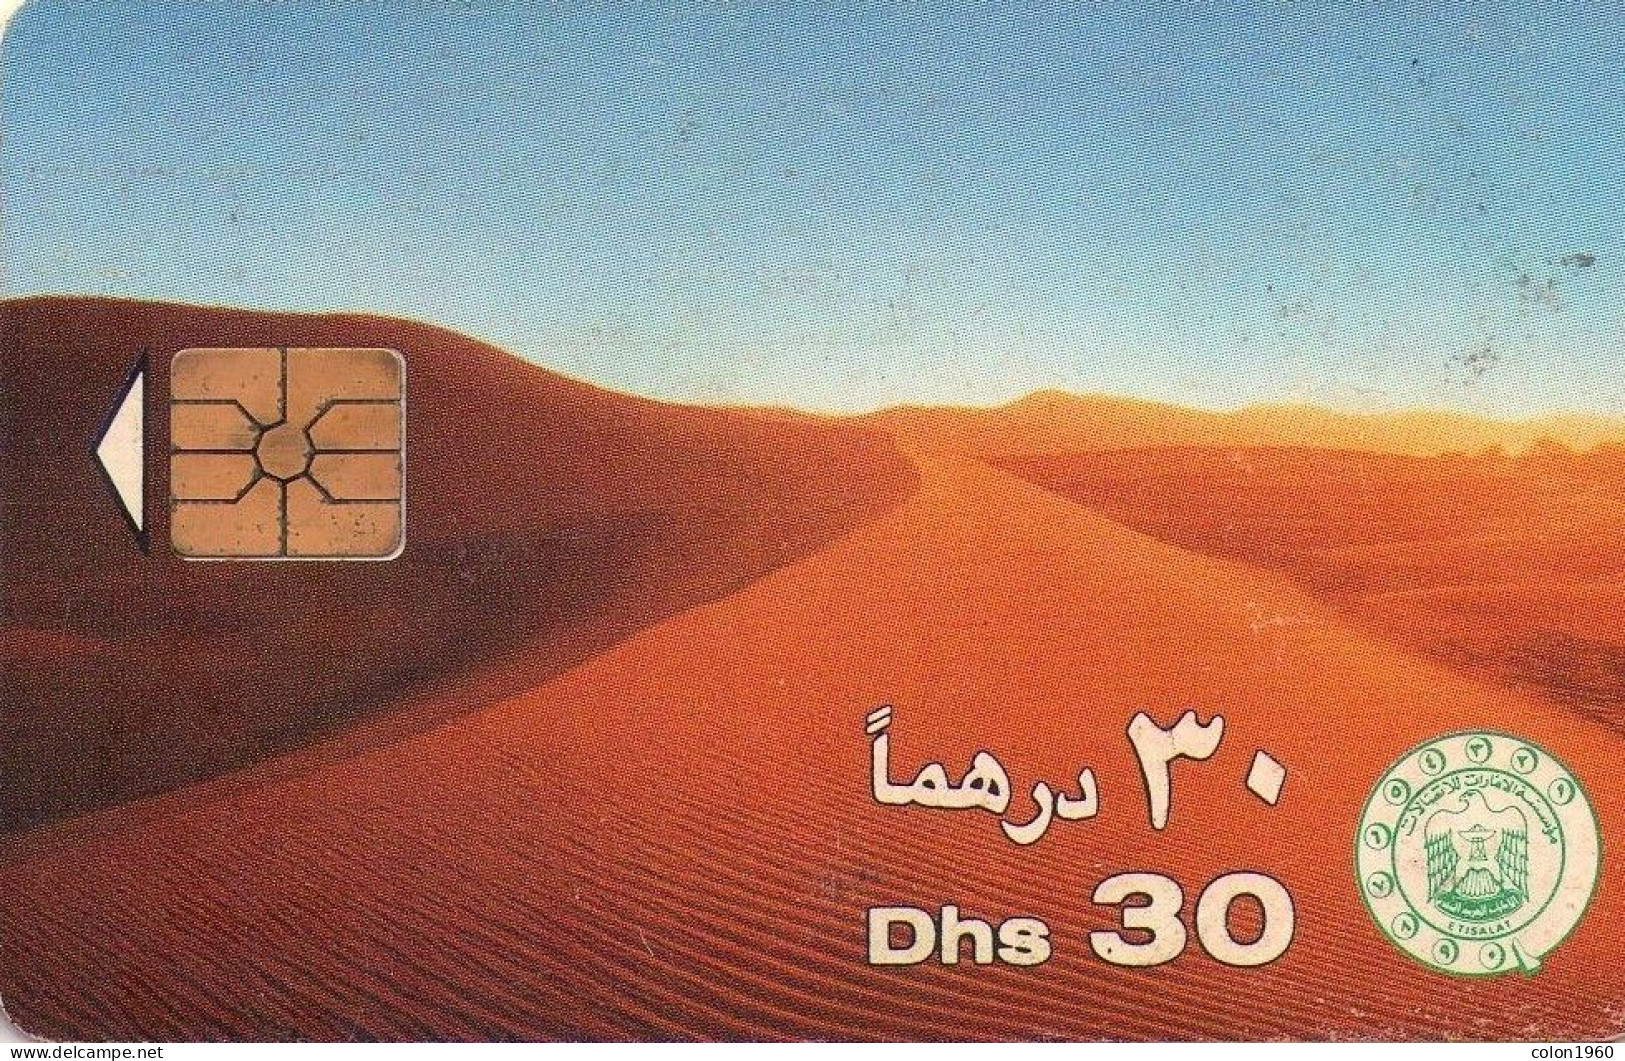 EMIRATOS ARABES UNIDOS. AE-ETI-CHP-0002C. Desert Sand Dunes (CN "9511"). 1995. (052) - Verenigde Arabische Emiraten